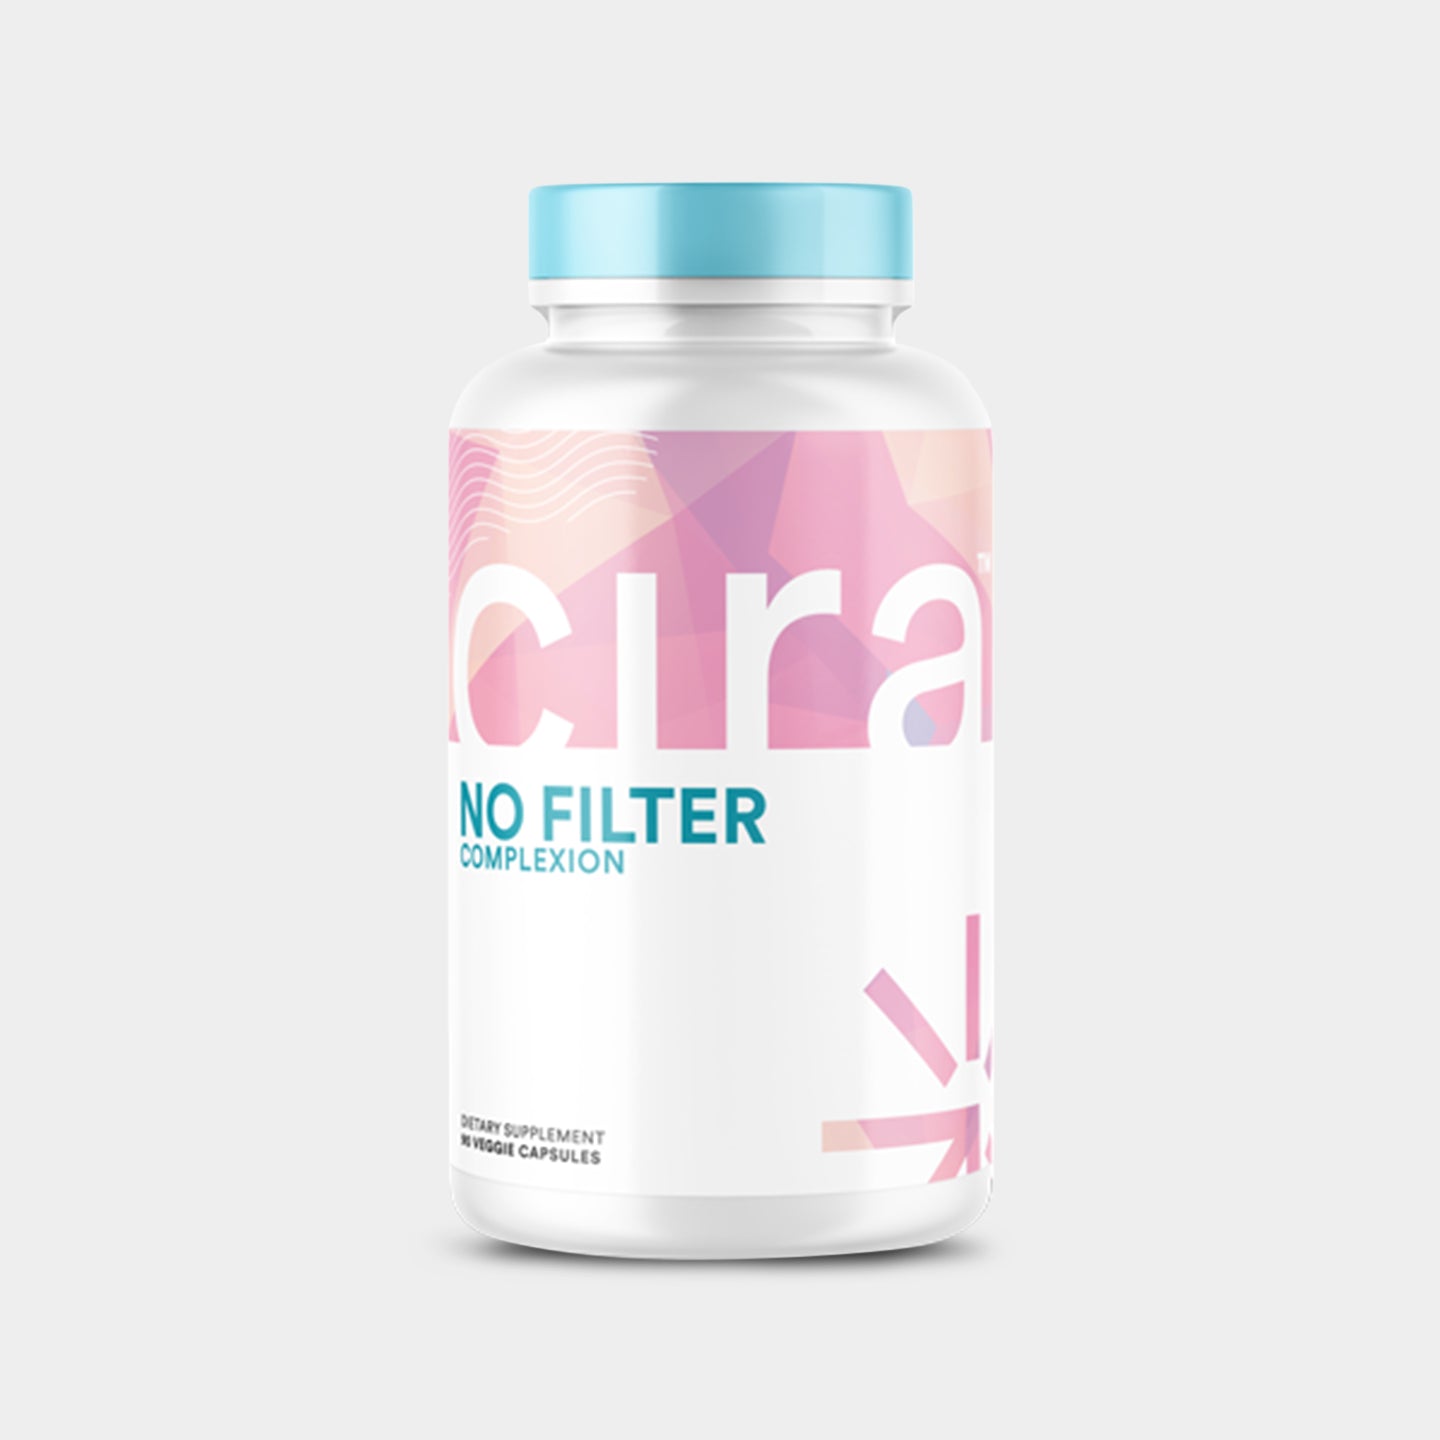 Cira Nutrition No Filter